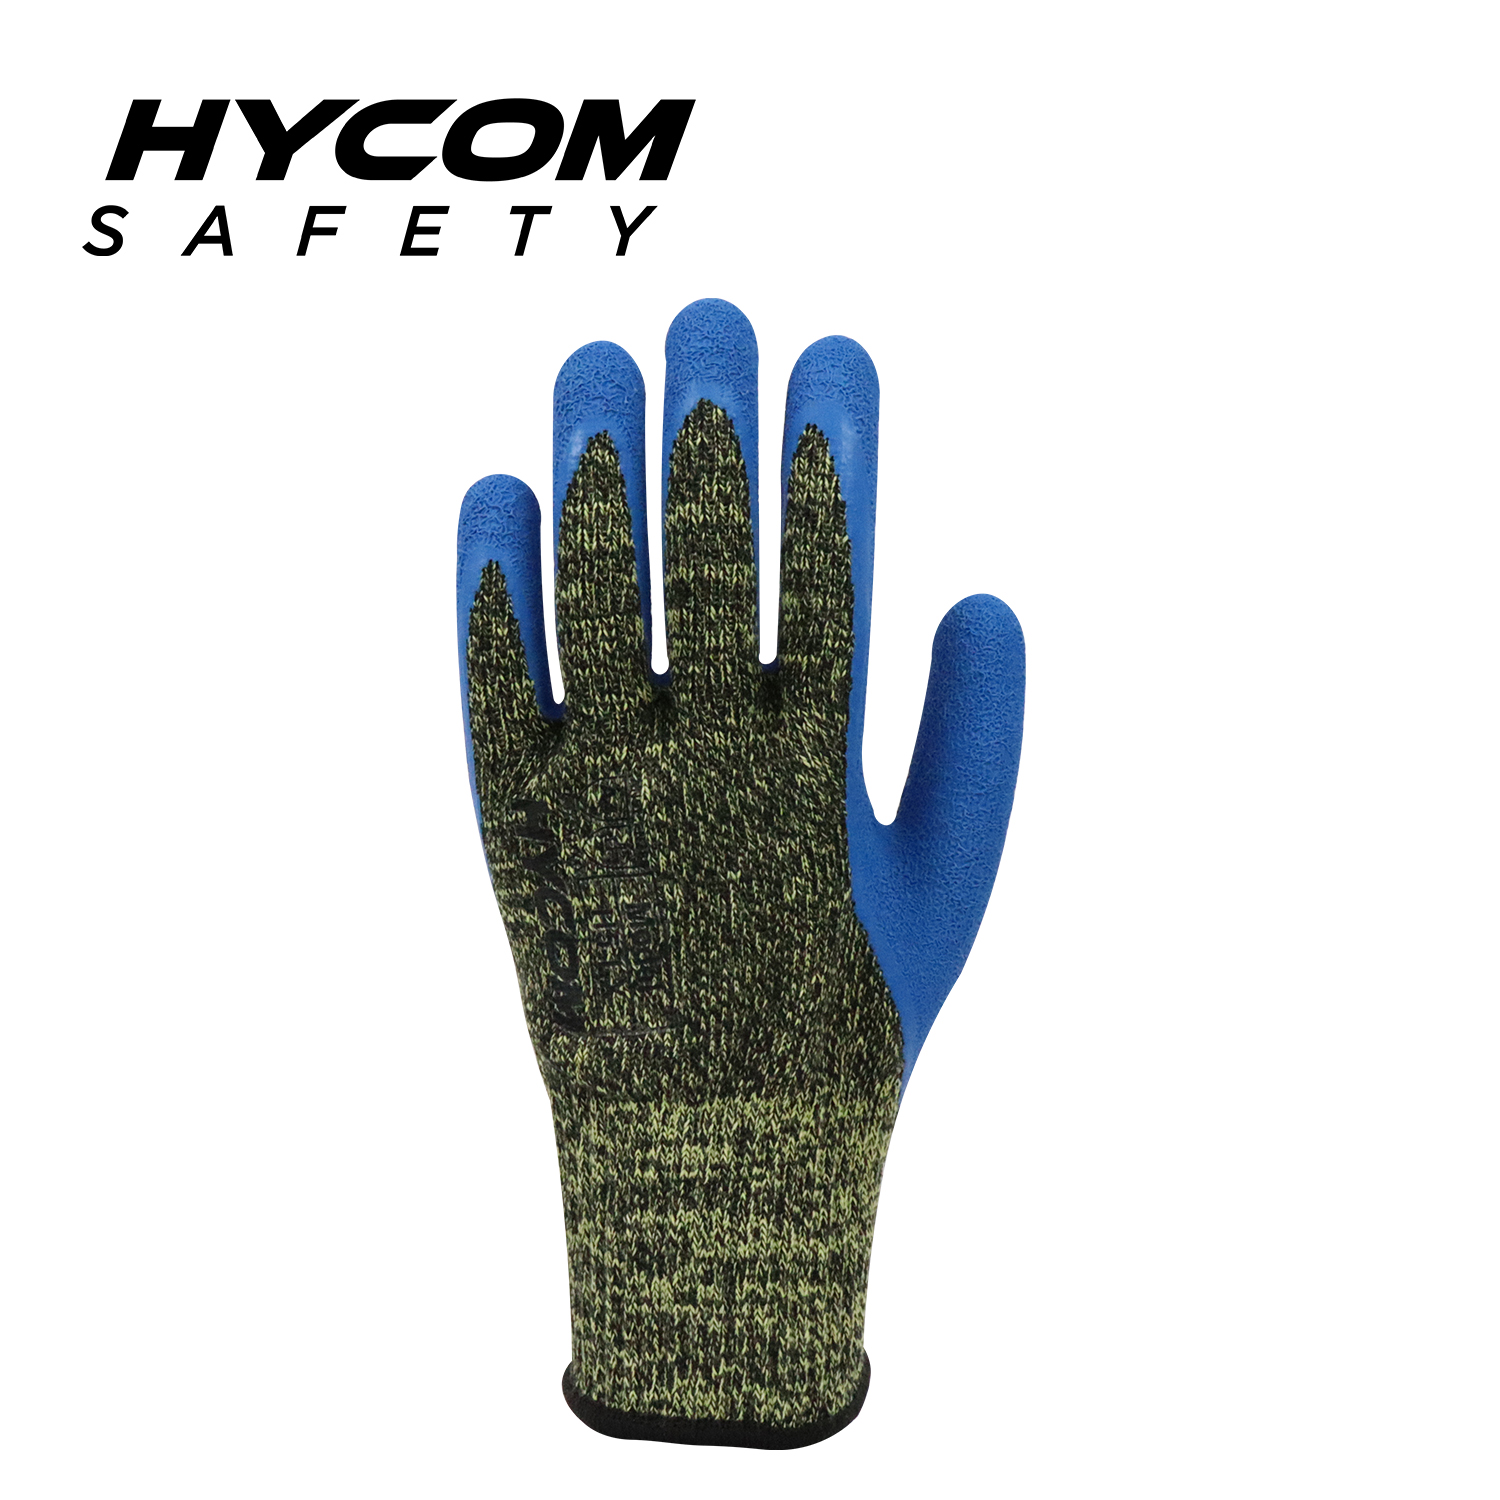 HYCOM 10G Aramid-Kontakthandschuh für hohe Temperaturen bis 250 °C/480 F, schnittfest, mit Crinkle-Latex-Handschuh